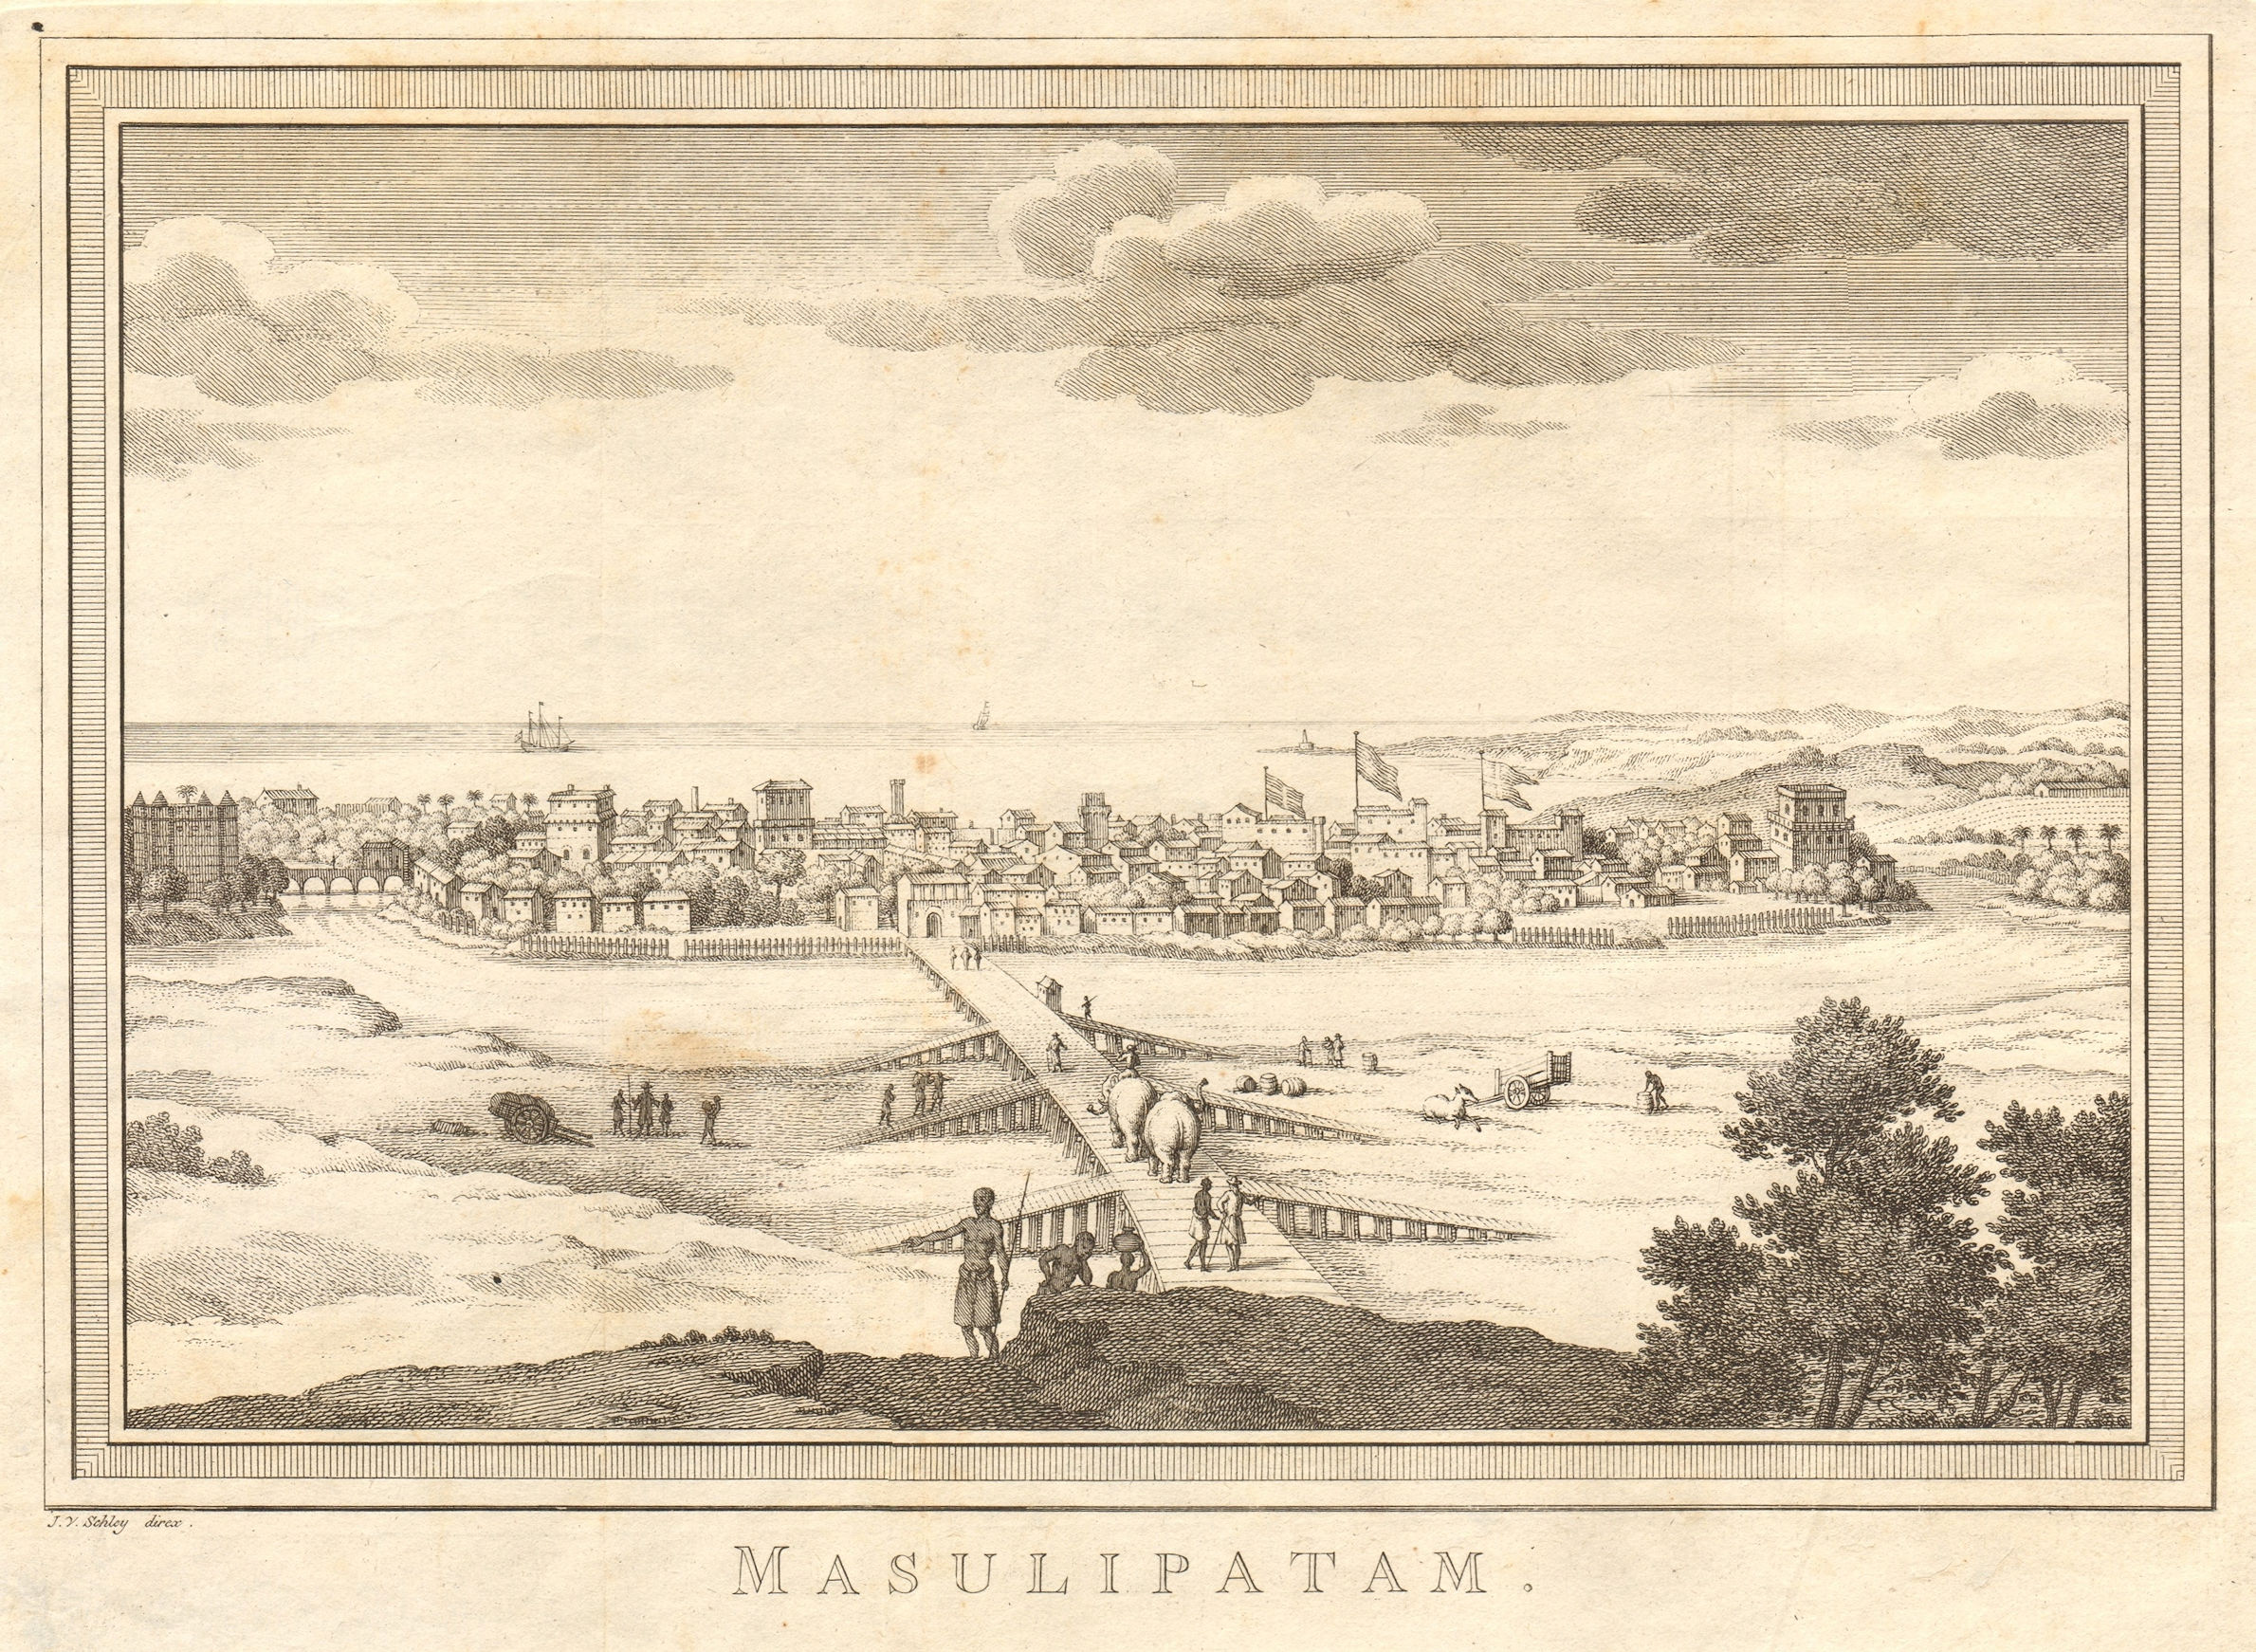 'Masulipatan'. View of Machilipatnam, Andhra Pradesh, India. SCHLEY 1755 print